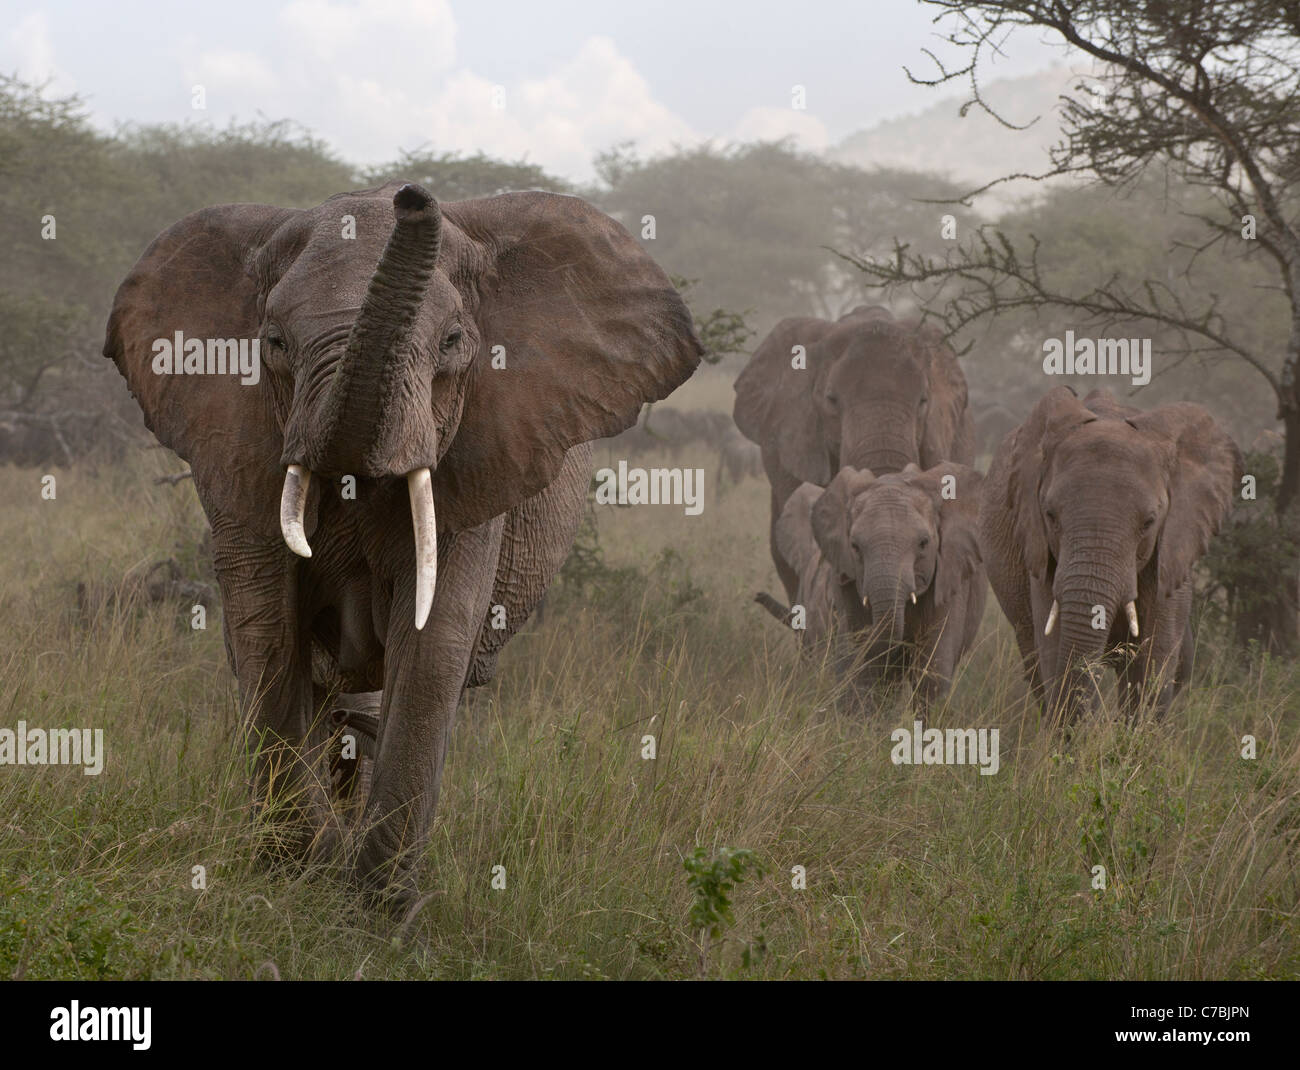 Elephants at the Serengeti National Park, Tanzania, Africa Stock Photo